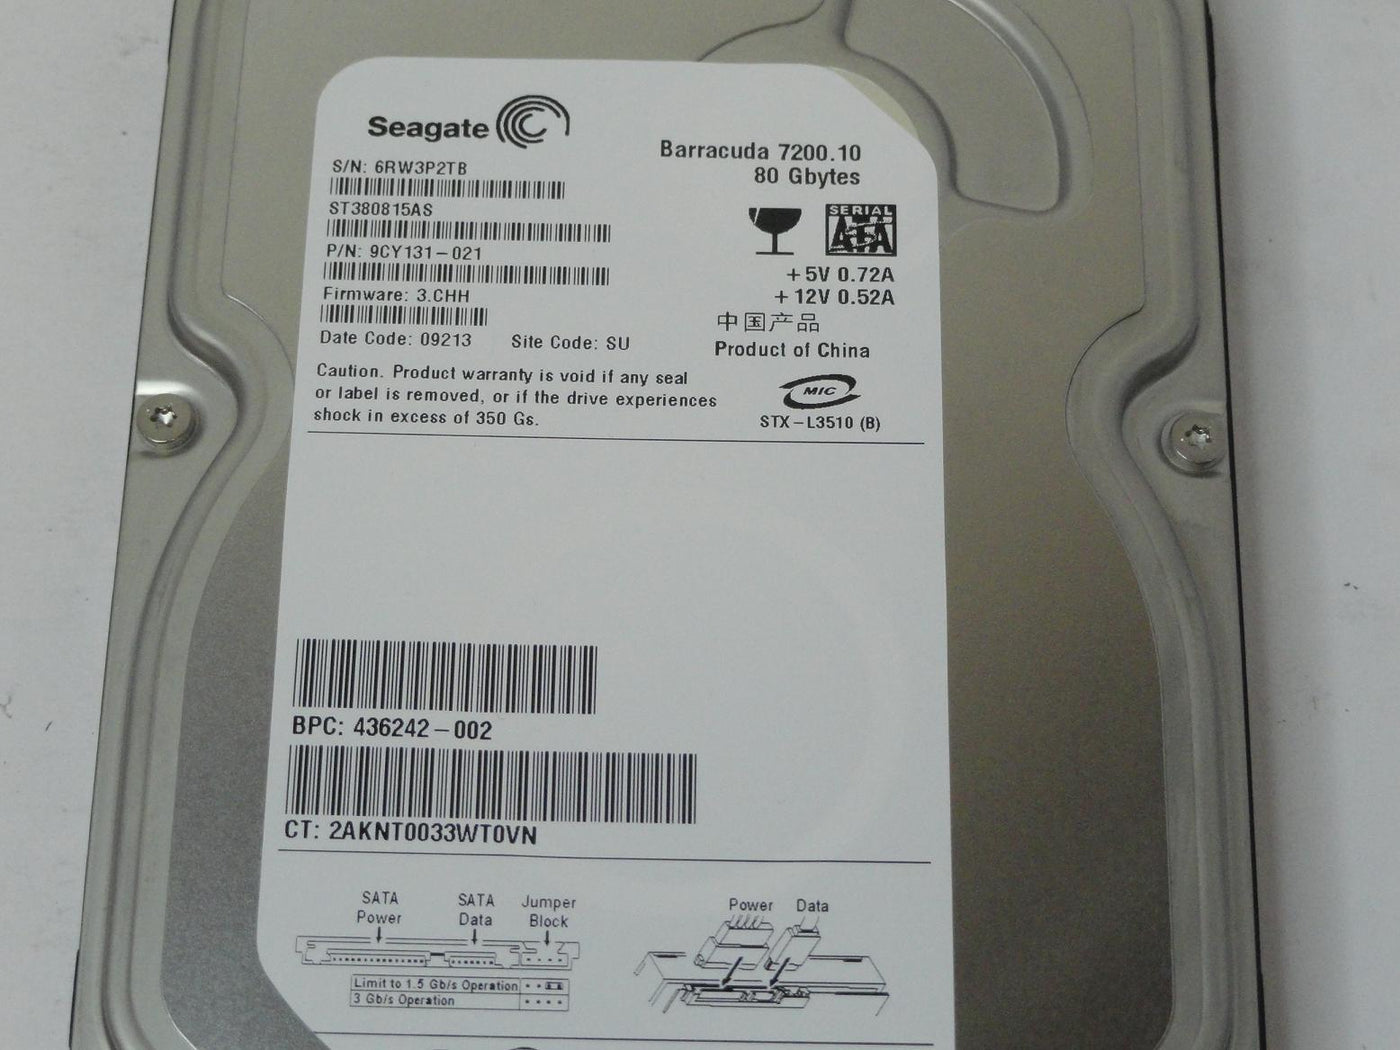 PR24754_9CY131-021_Seagate HP 80GB SATA 7200rpm 3.5in HDD - Image3